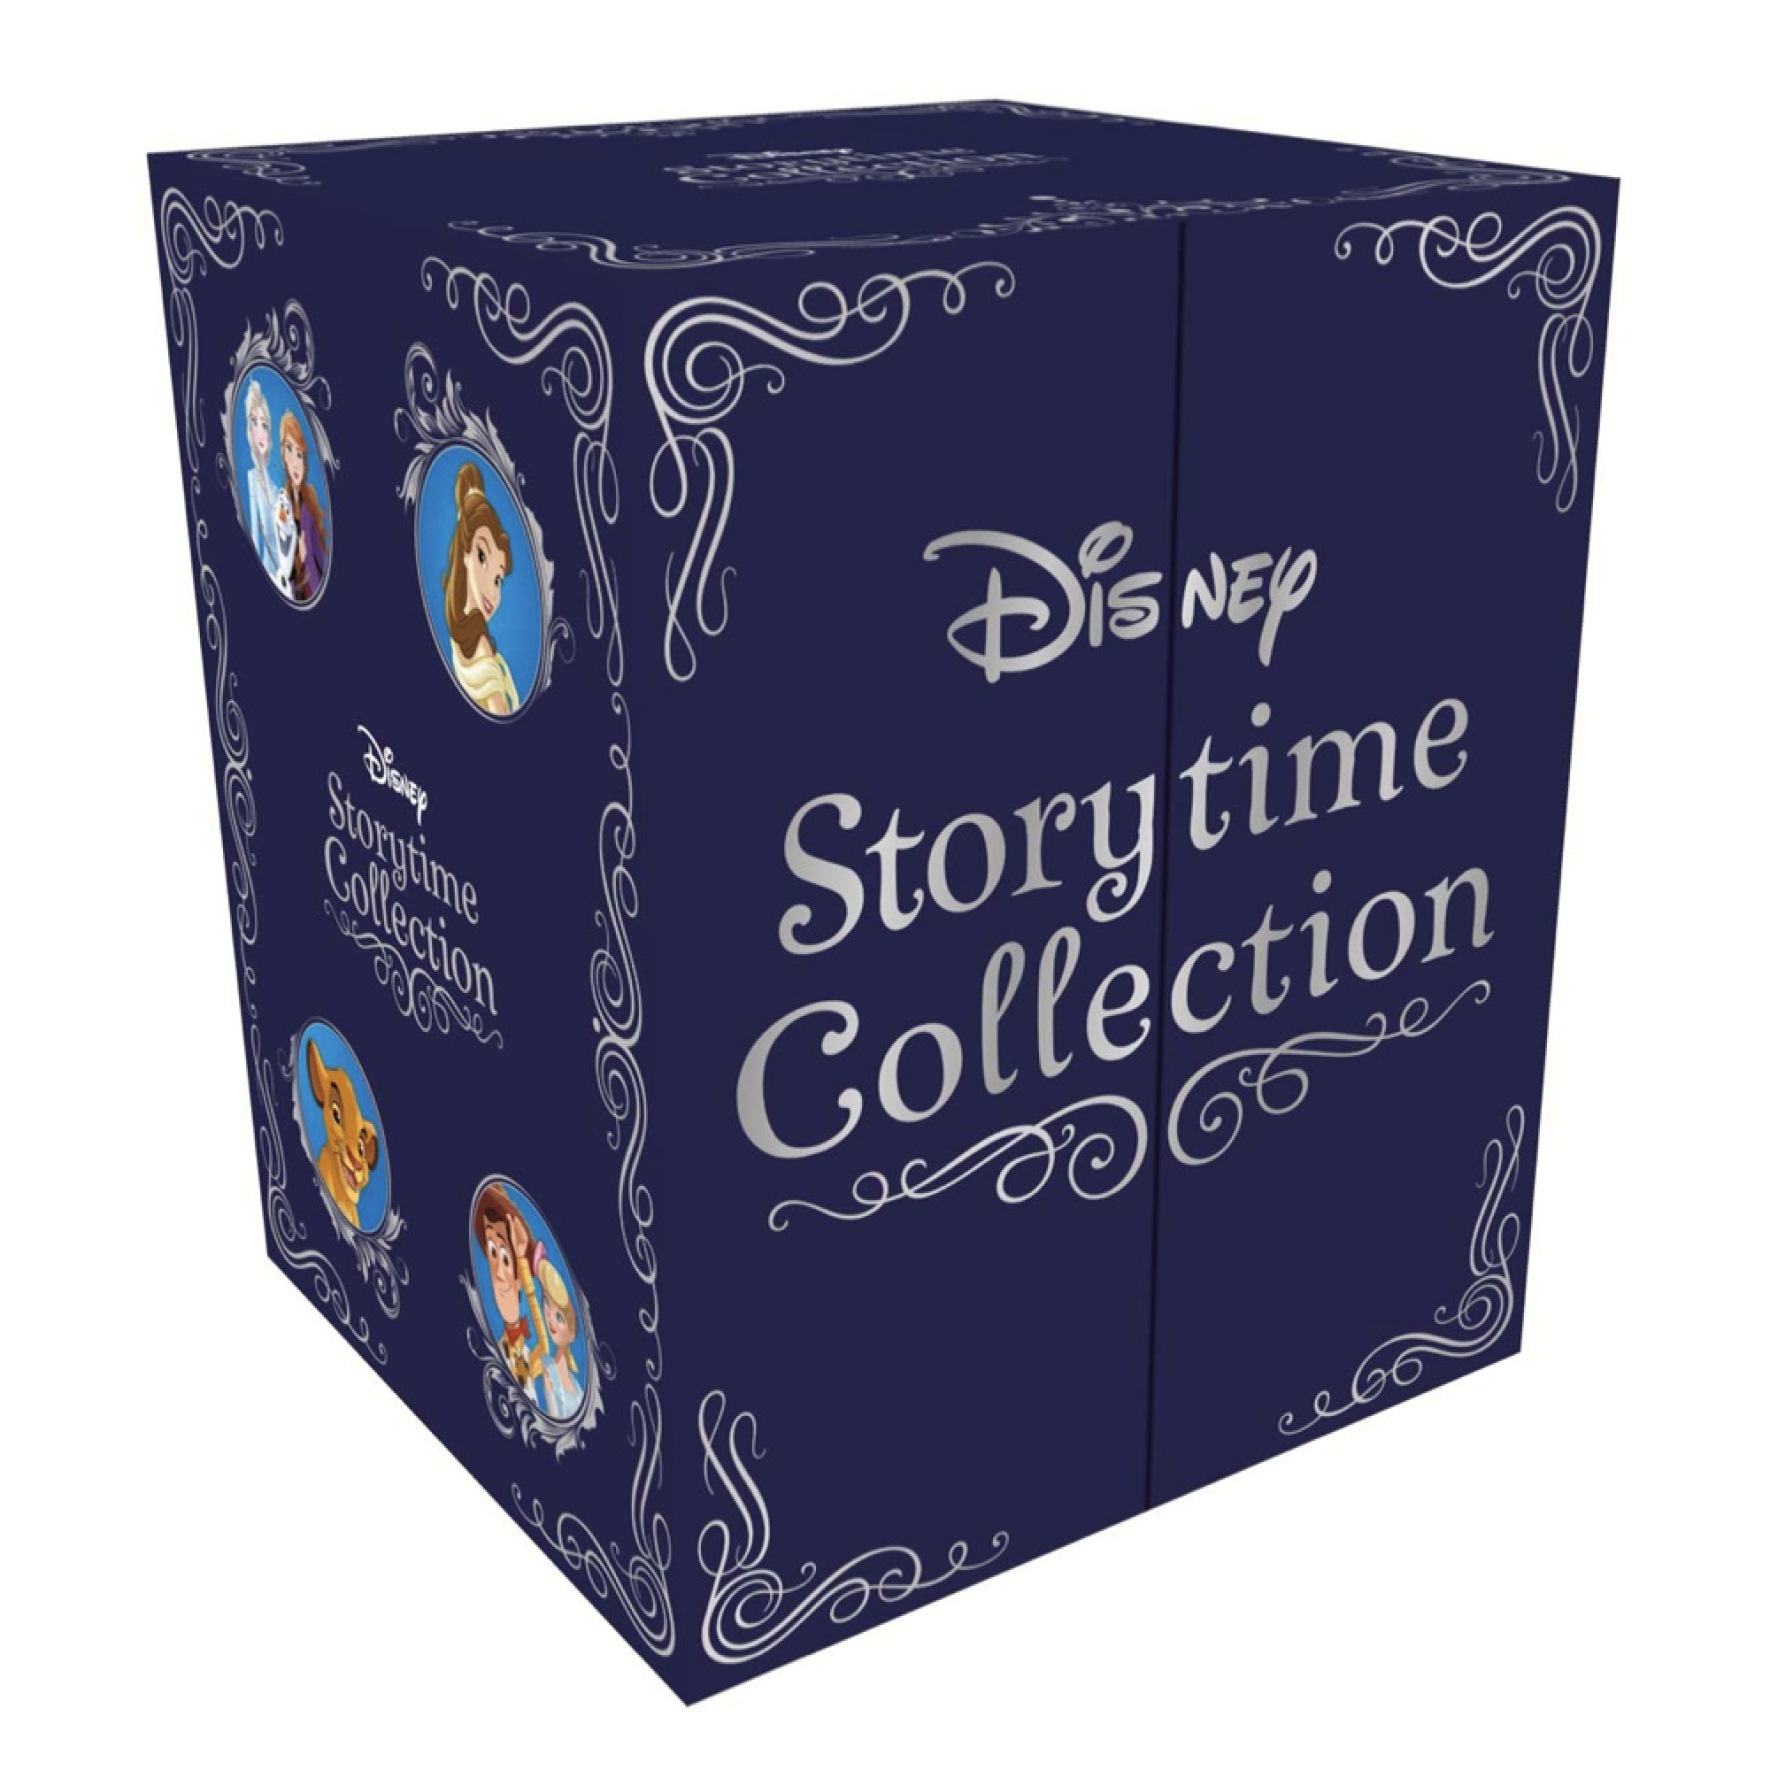  باکس کتاب های دیزنی Disney Storytime Collection 